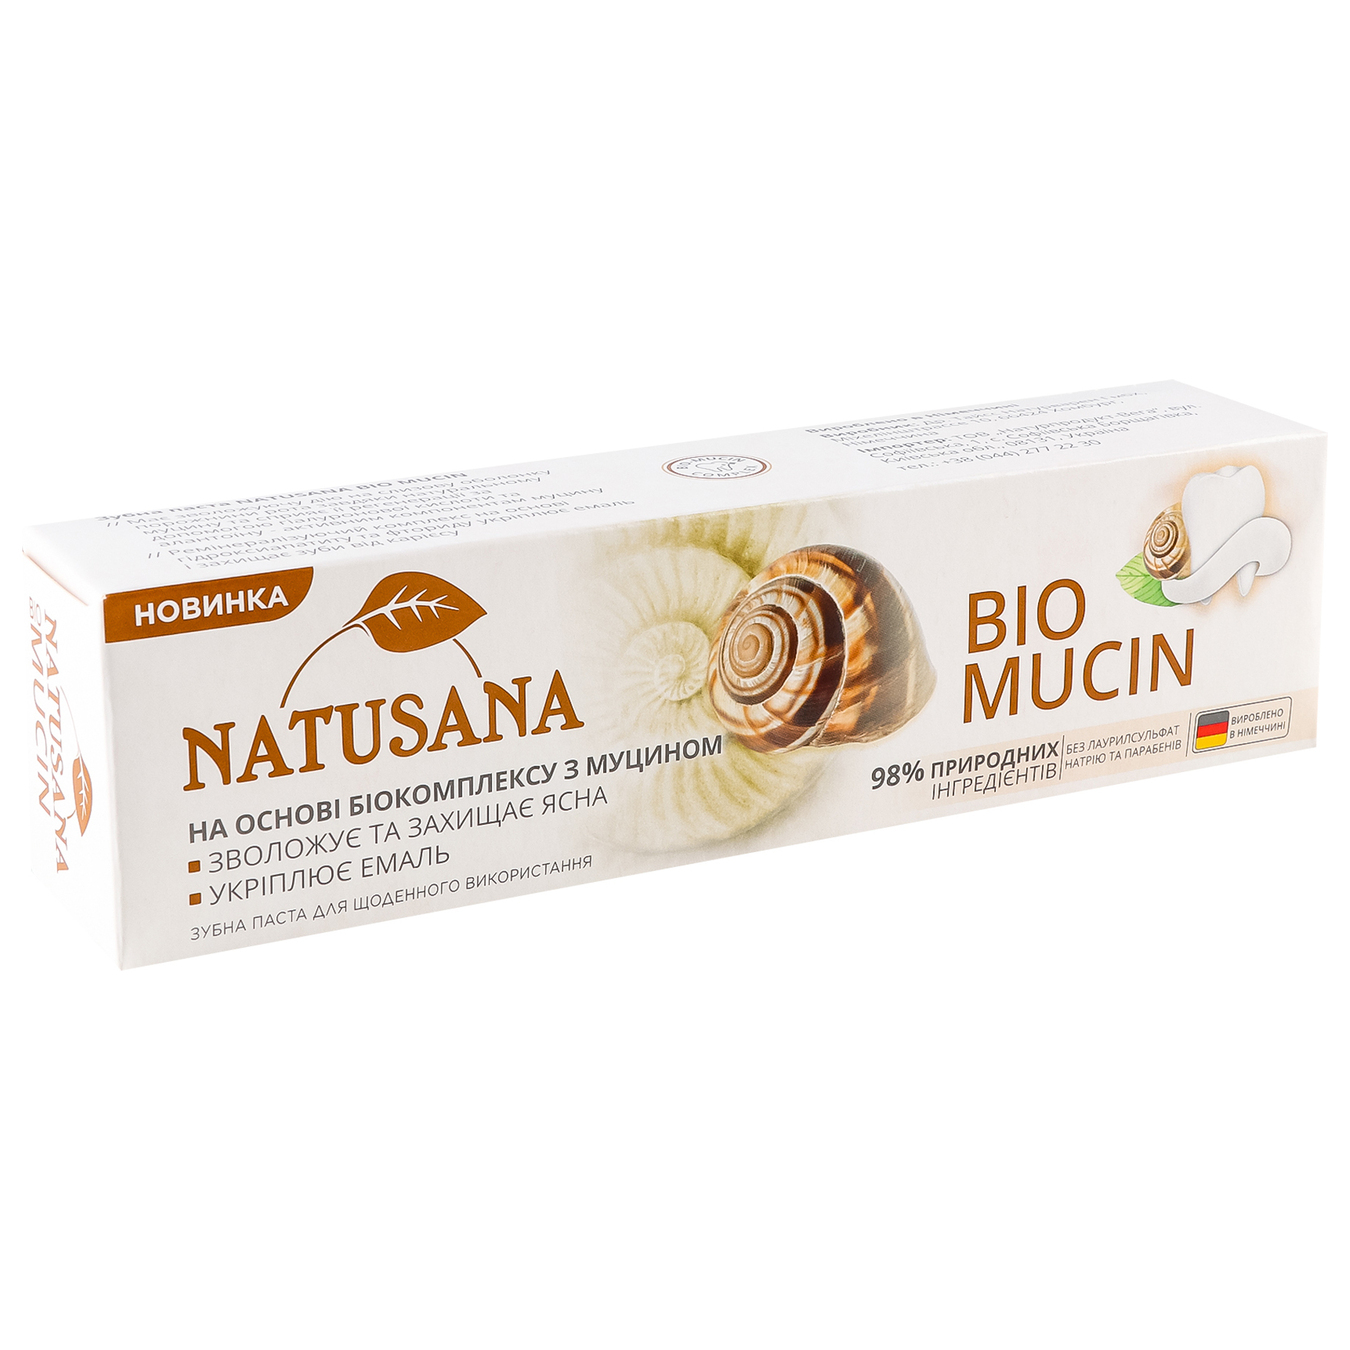 Toothpaste Natusana Bio Mucin 100ml 6